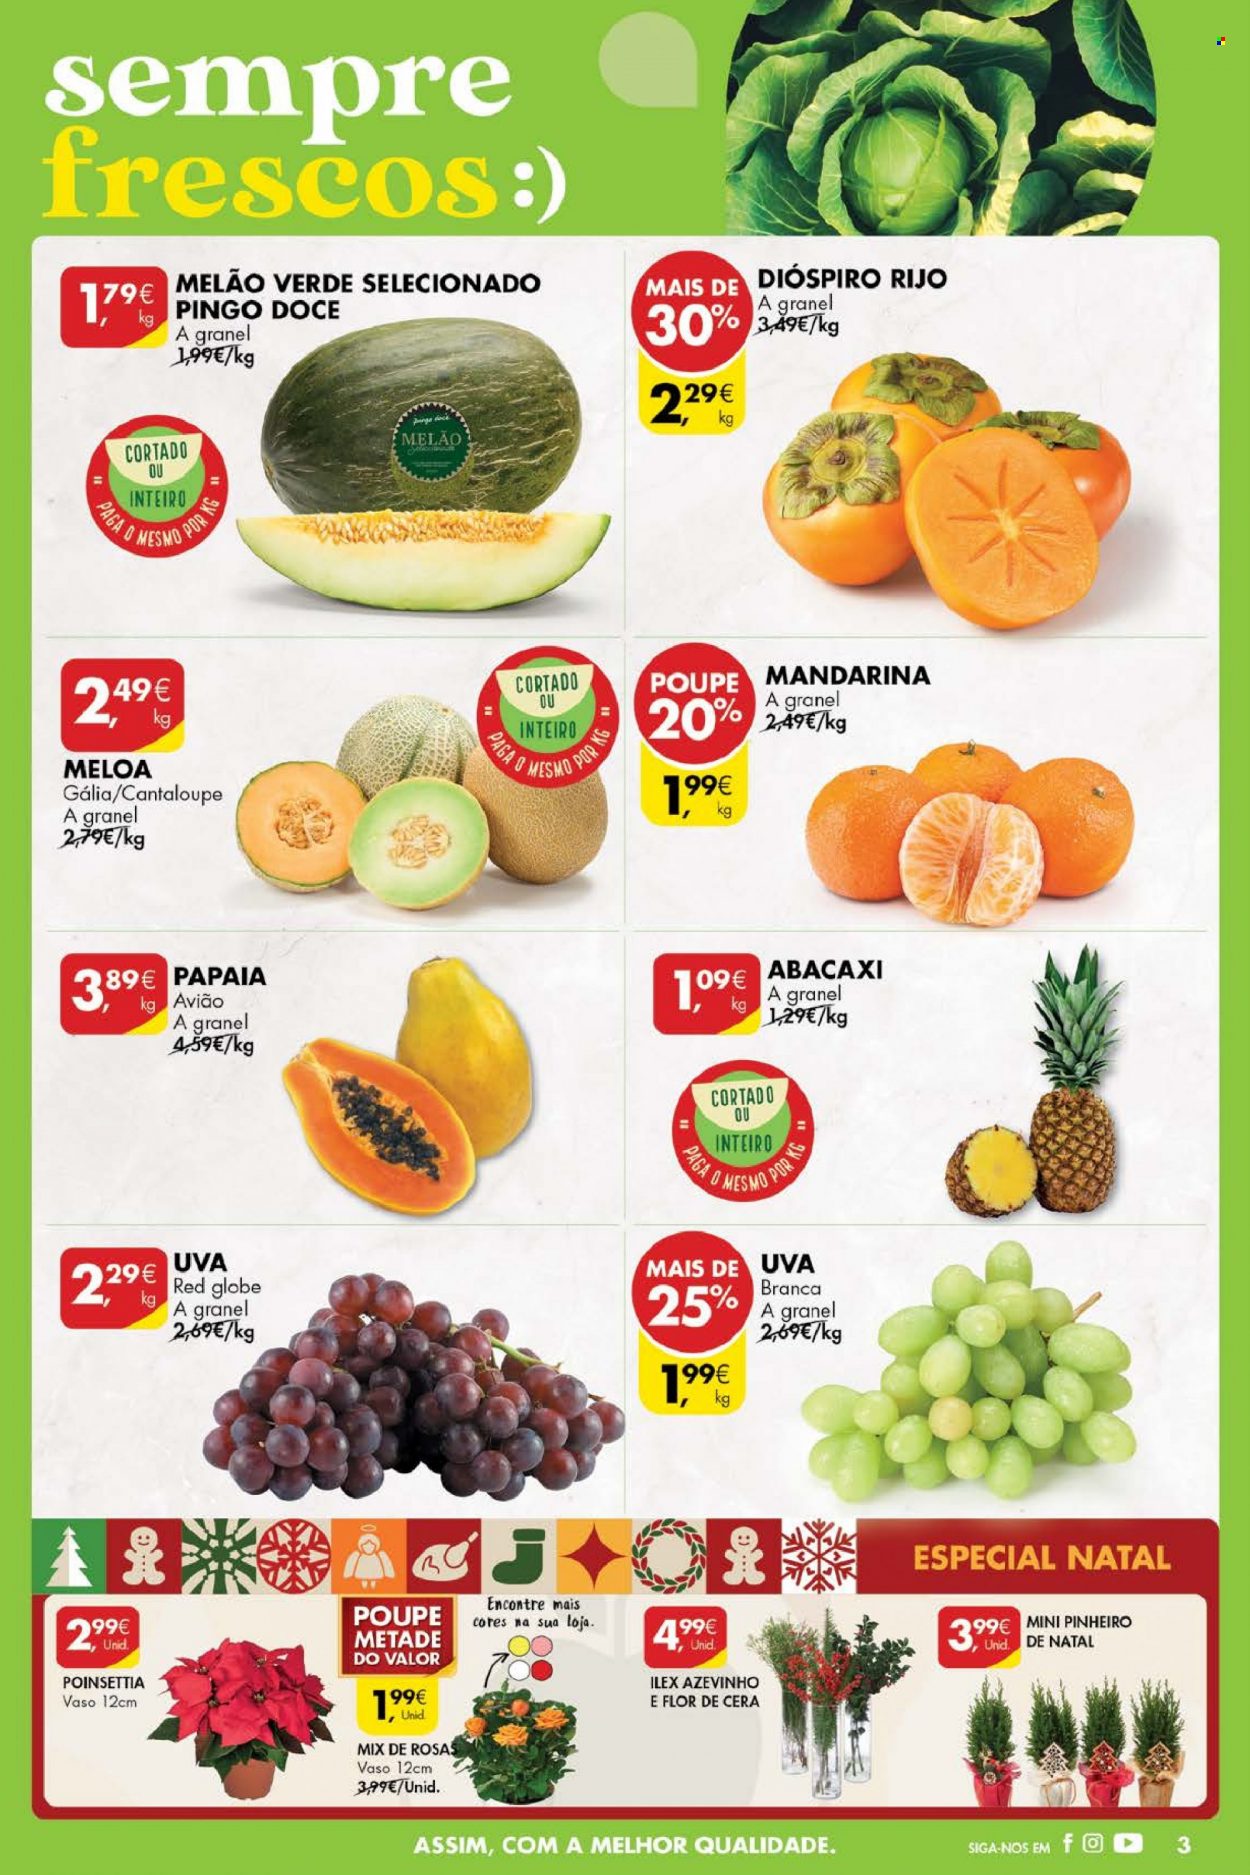 thumbnail - Folheto Pingo Doce - 29.11.2022 - 5.12.2022 - Produtos em promoção - abacaxi, papaia, melão, mamão, mandarina, uva branca, melão verde, poinséttia. Página 3.